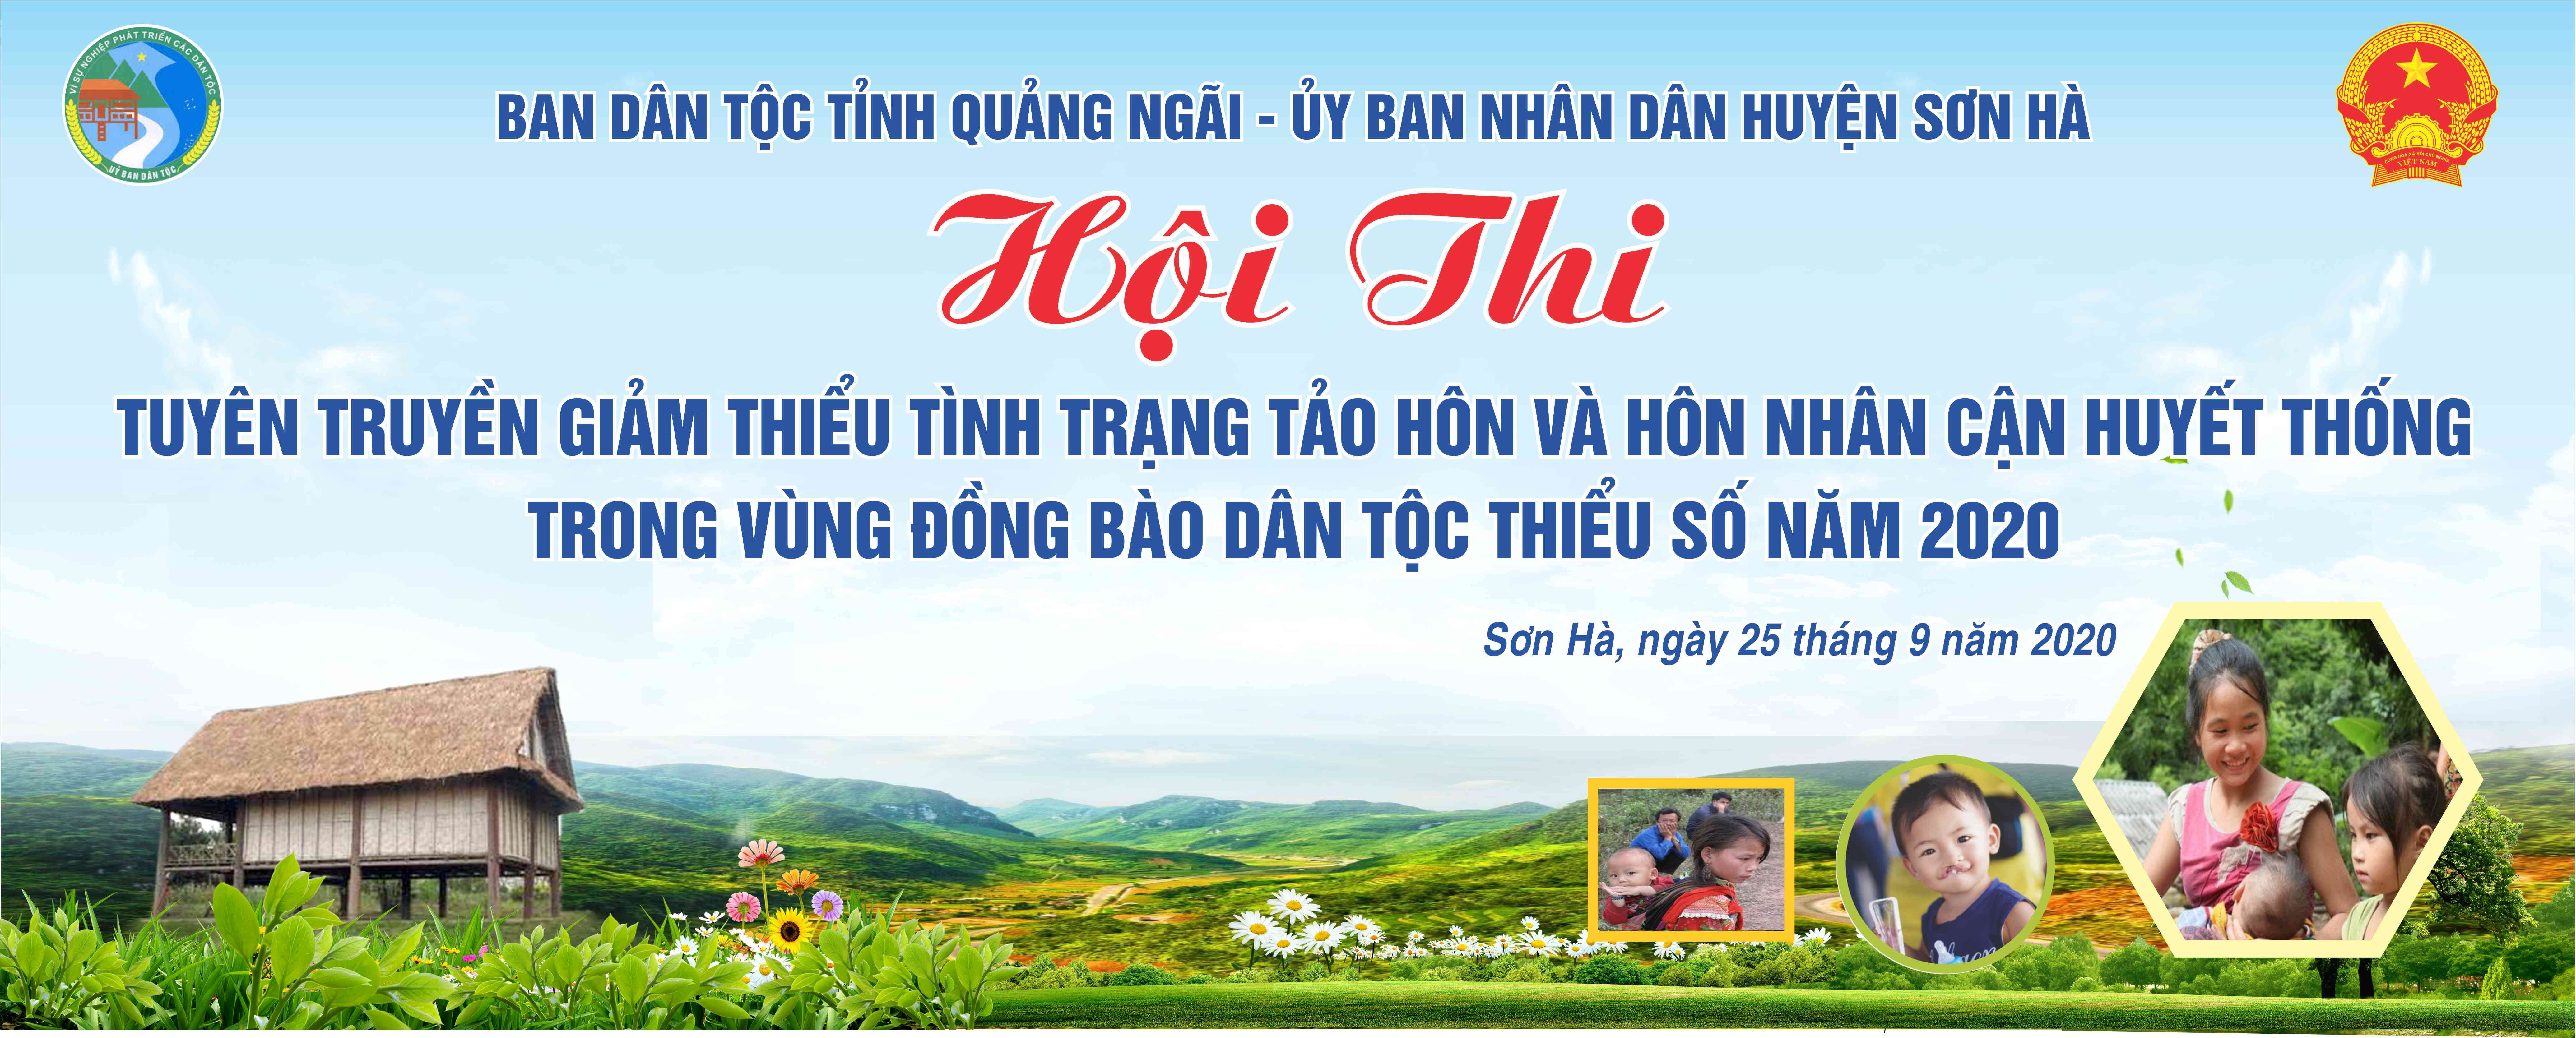 Khai mạc Hội thi Tuyên truyền giảm thiểu tình trạng tảo hôn và hôn nhân cận huyết thống vào tối ngày 25/9/2020 tại trung tâm xã Sơn Hạ, huyện Sơn Hà